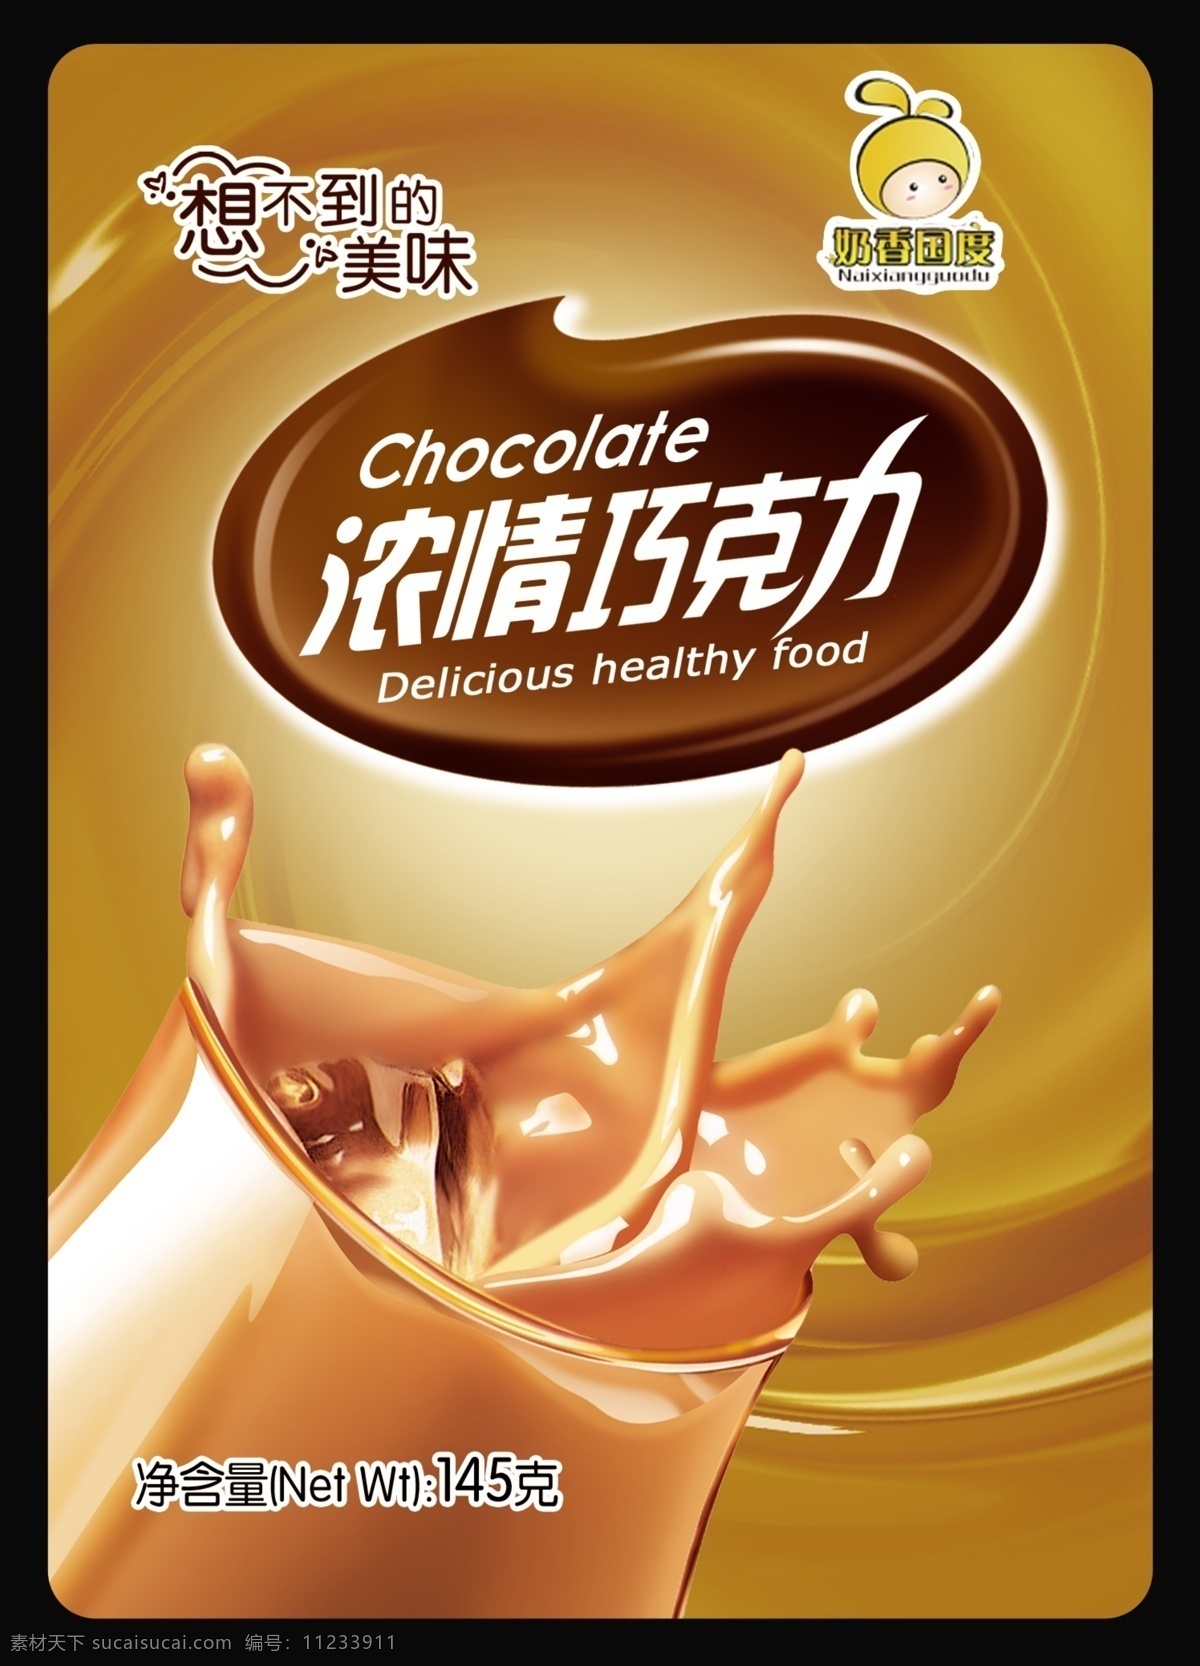 巧克力包装 模版下载 巧克力标志 浓情巧克力 巧克力 包装设计 广告设计模板 源文件